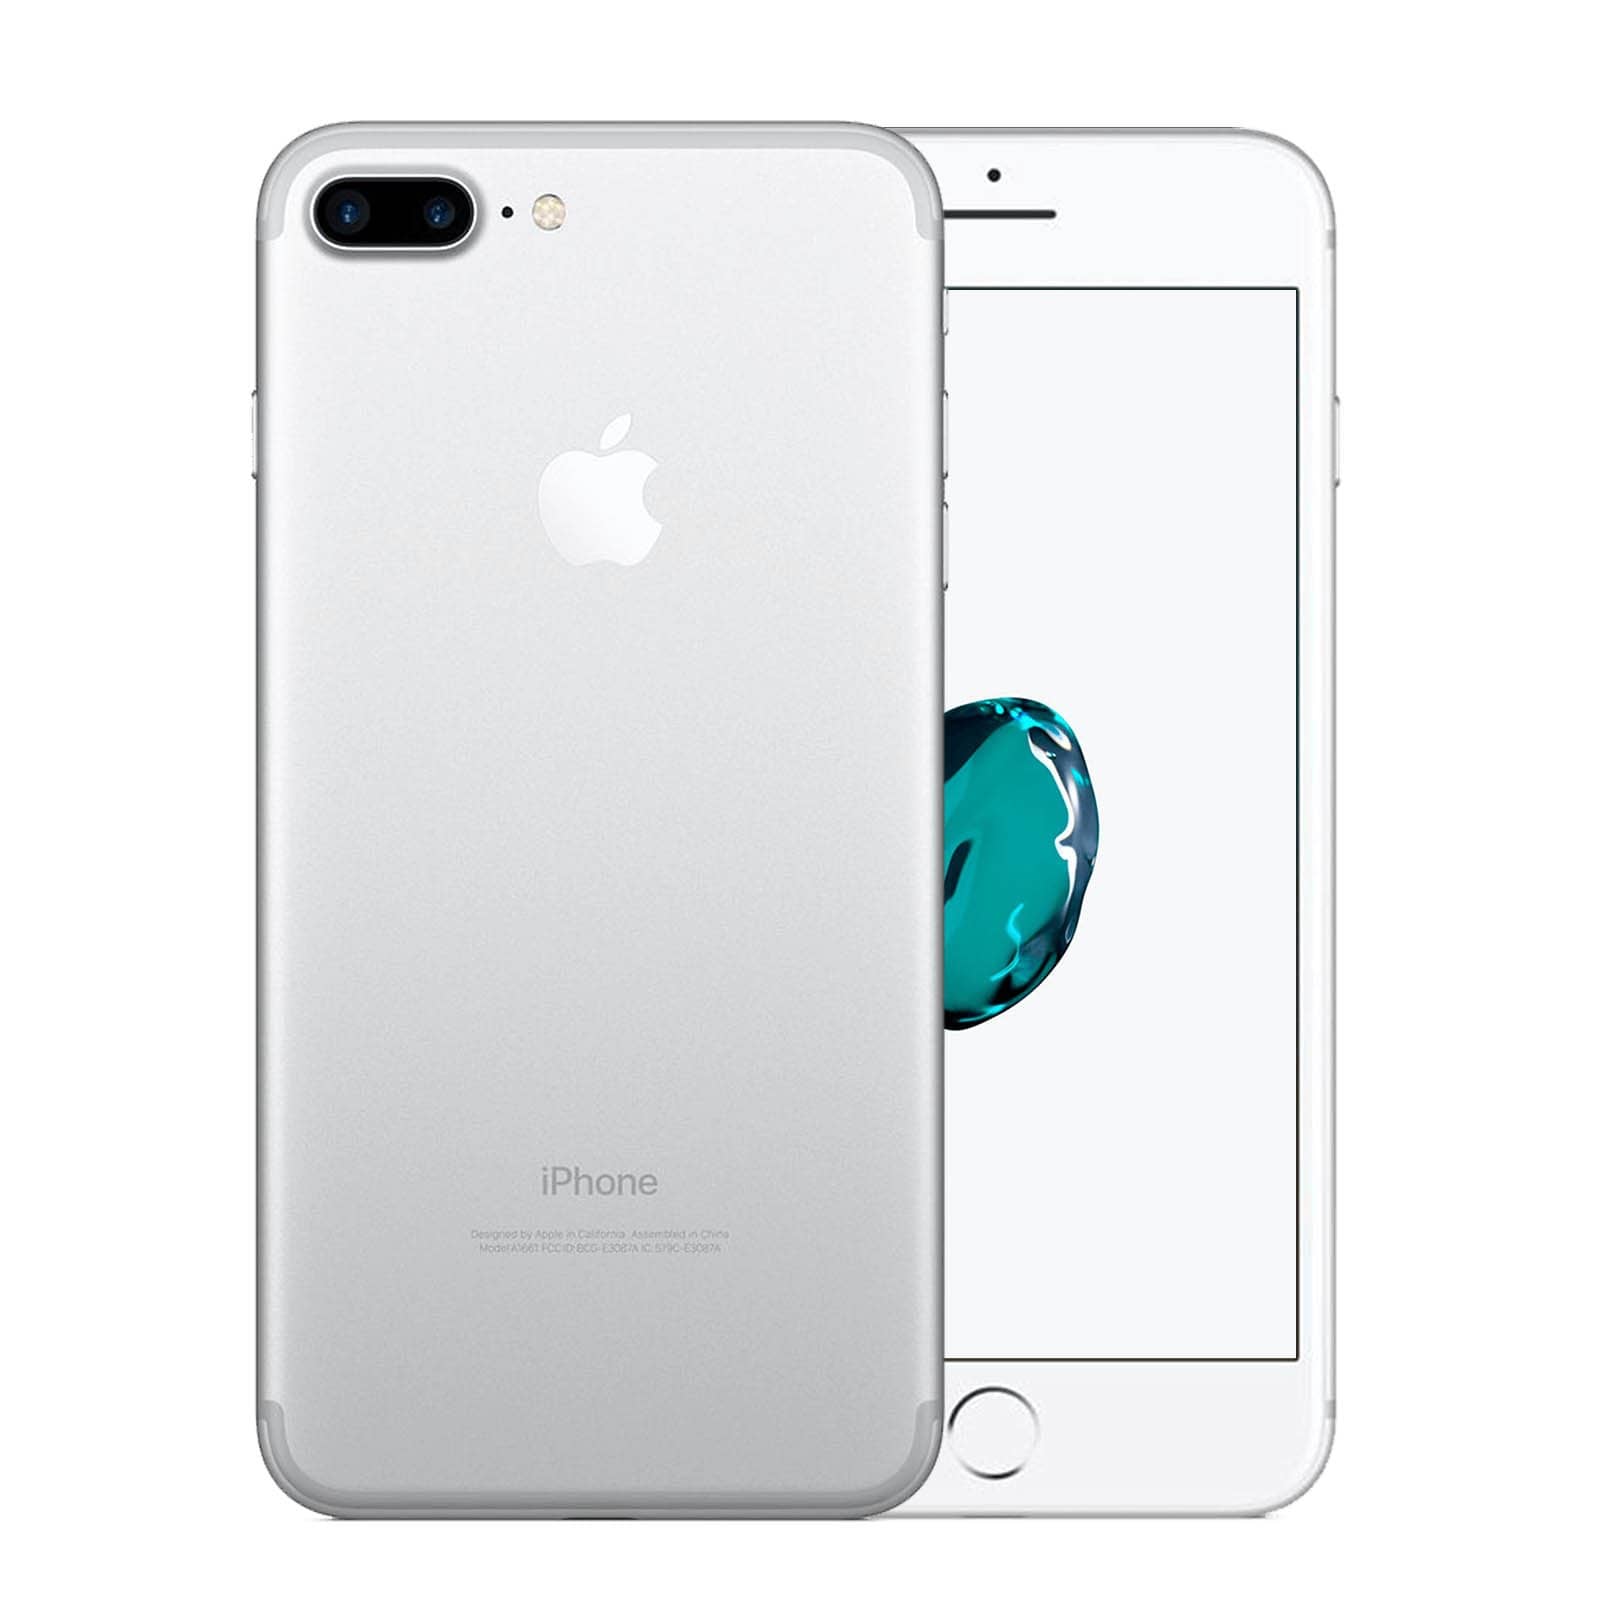 Apple iPhone 7 Plus 32GB Silver Fair - Unlocked 32GB Silver Fair